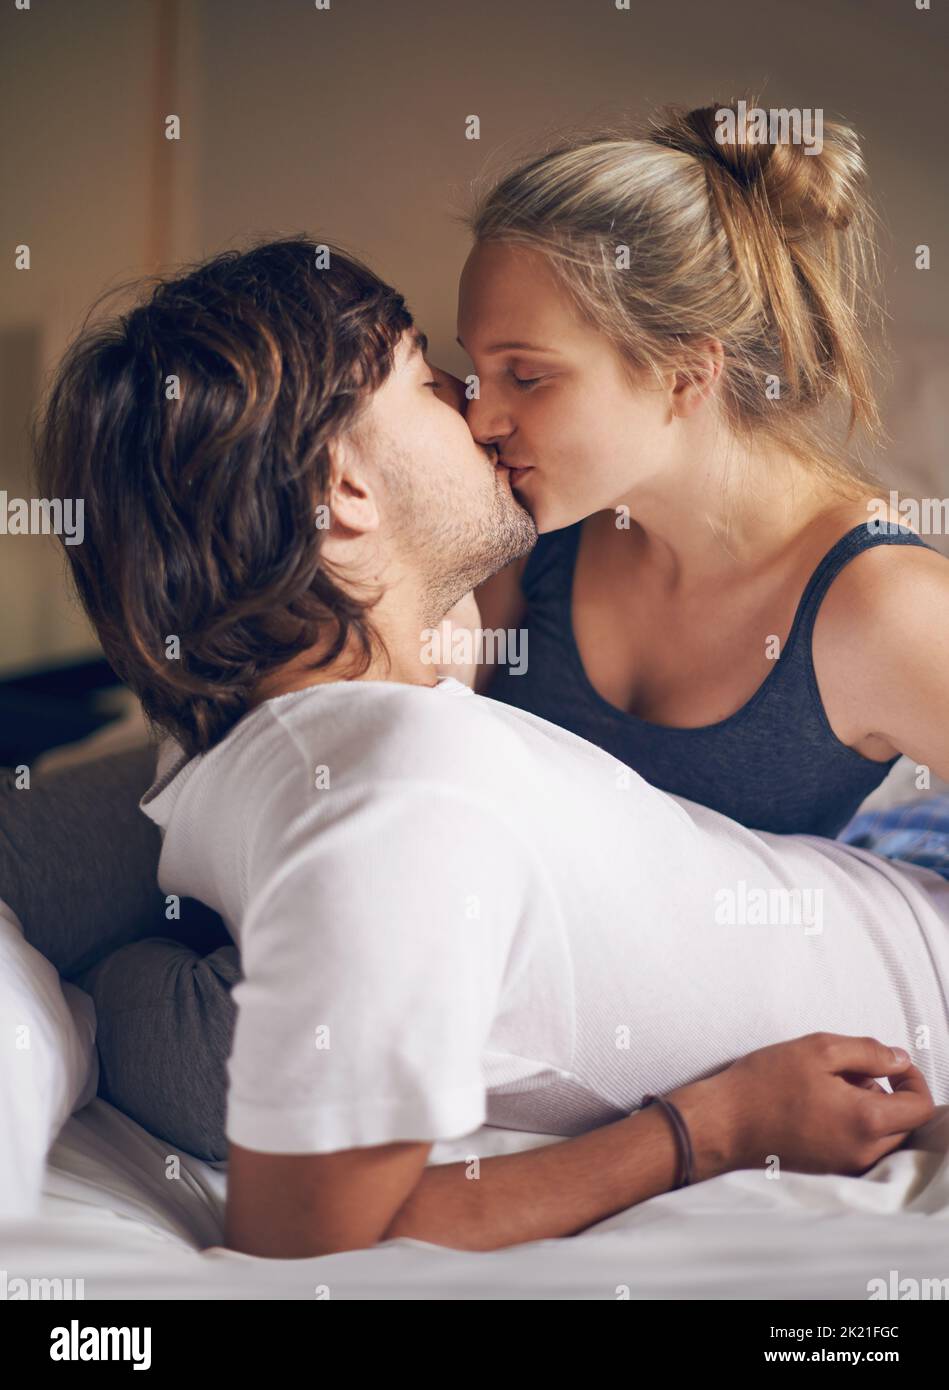 Aufwachen mit einem Kuss. Ein liebevolles junges Paar küsst sich im Bett. Stockfoto